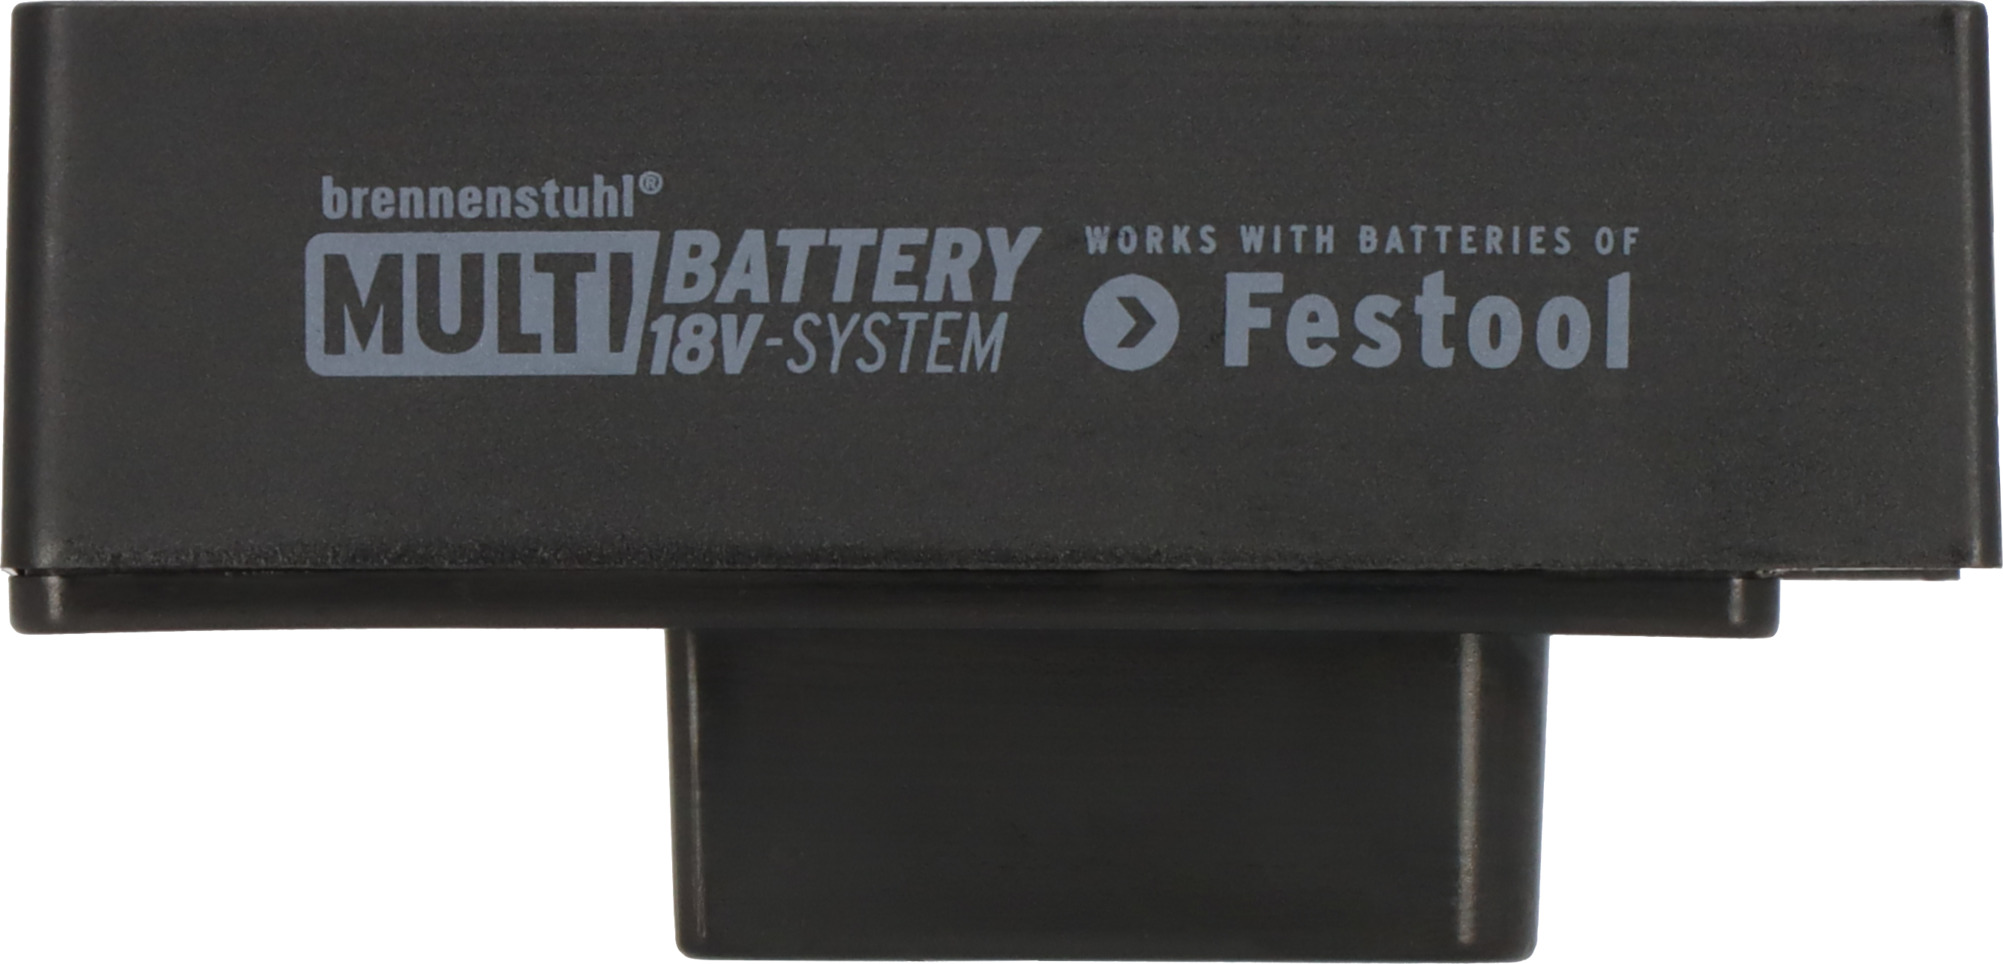 Adapter Festool für LED Baustrahler im brennenstuhl® Multi Battery